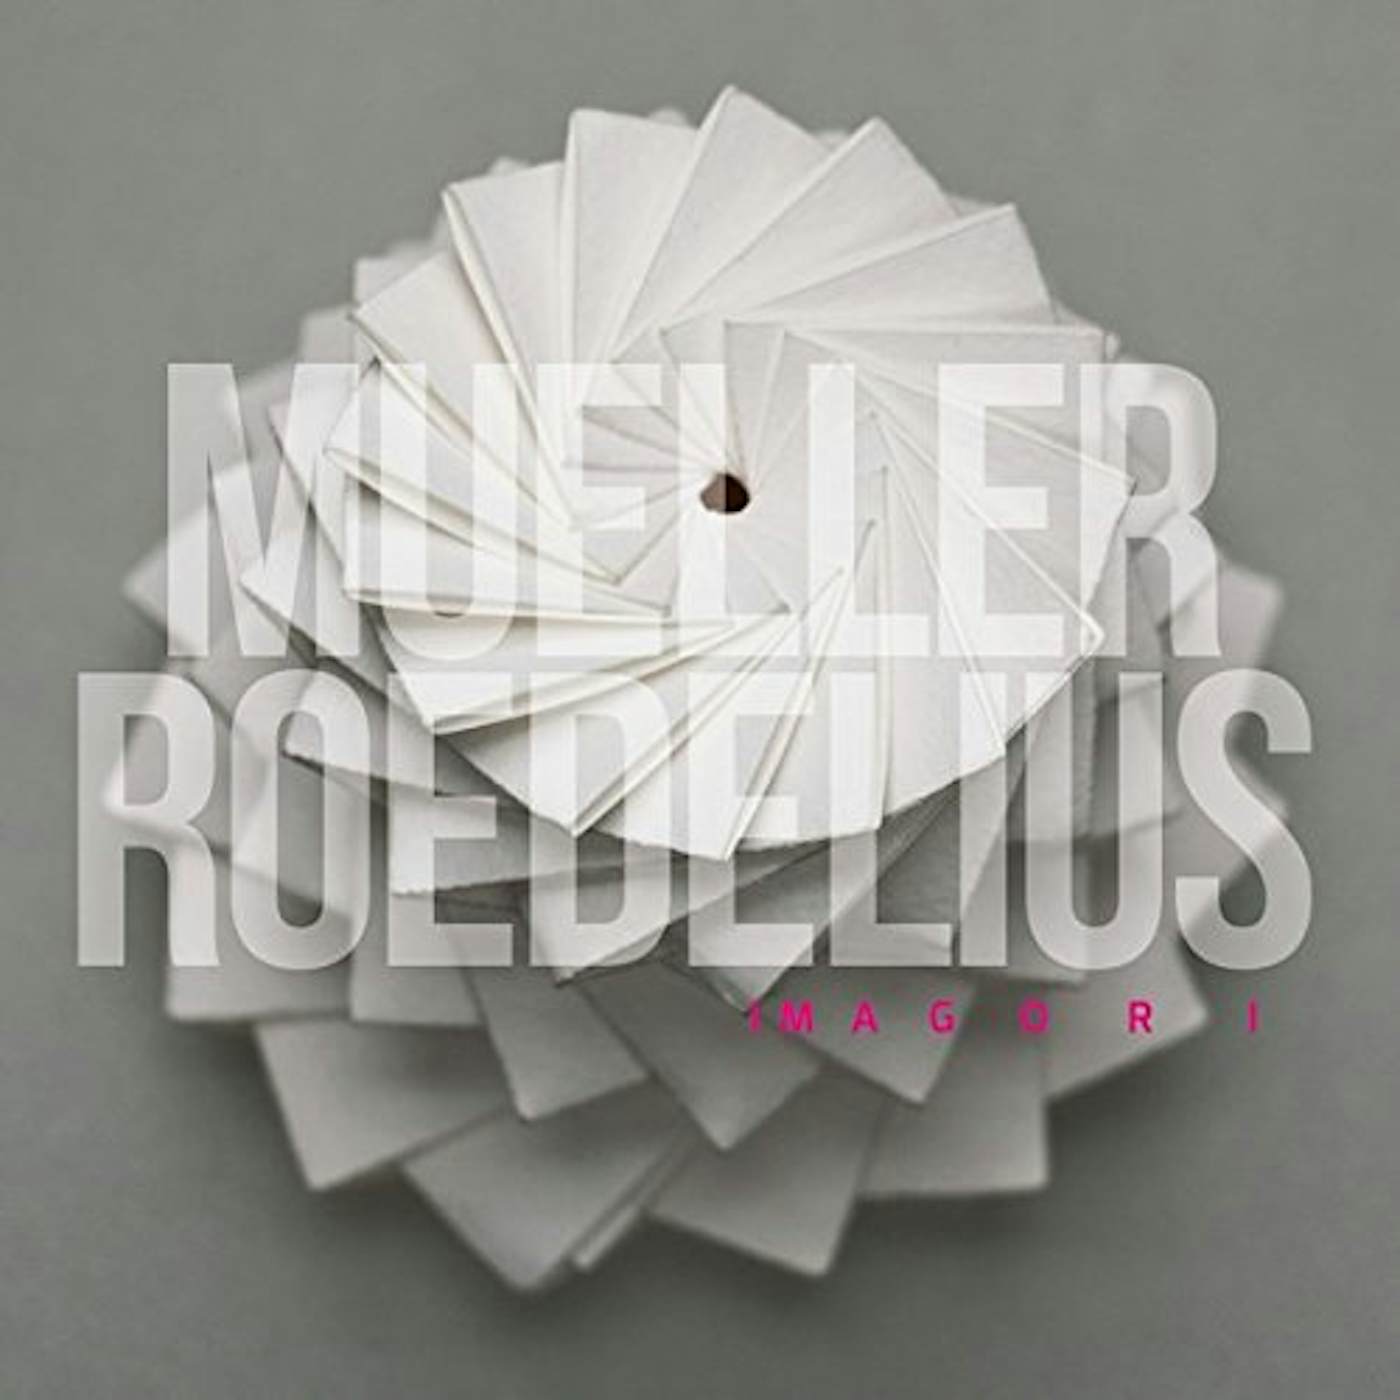 MUELLER-ROEDELIUS  IMAGORI CD